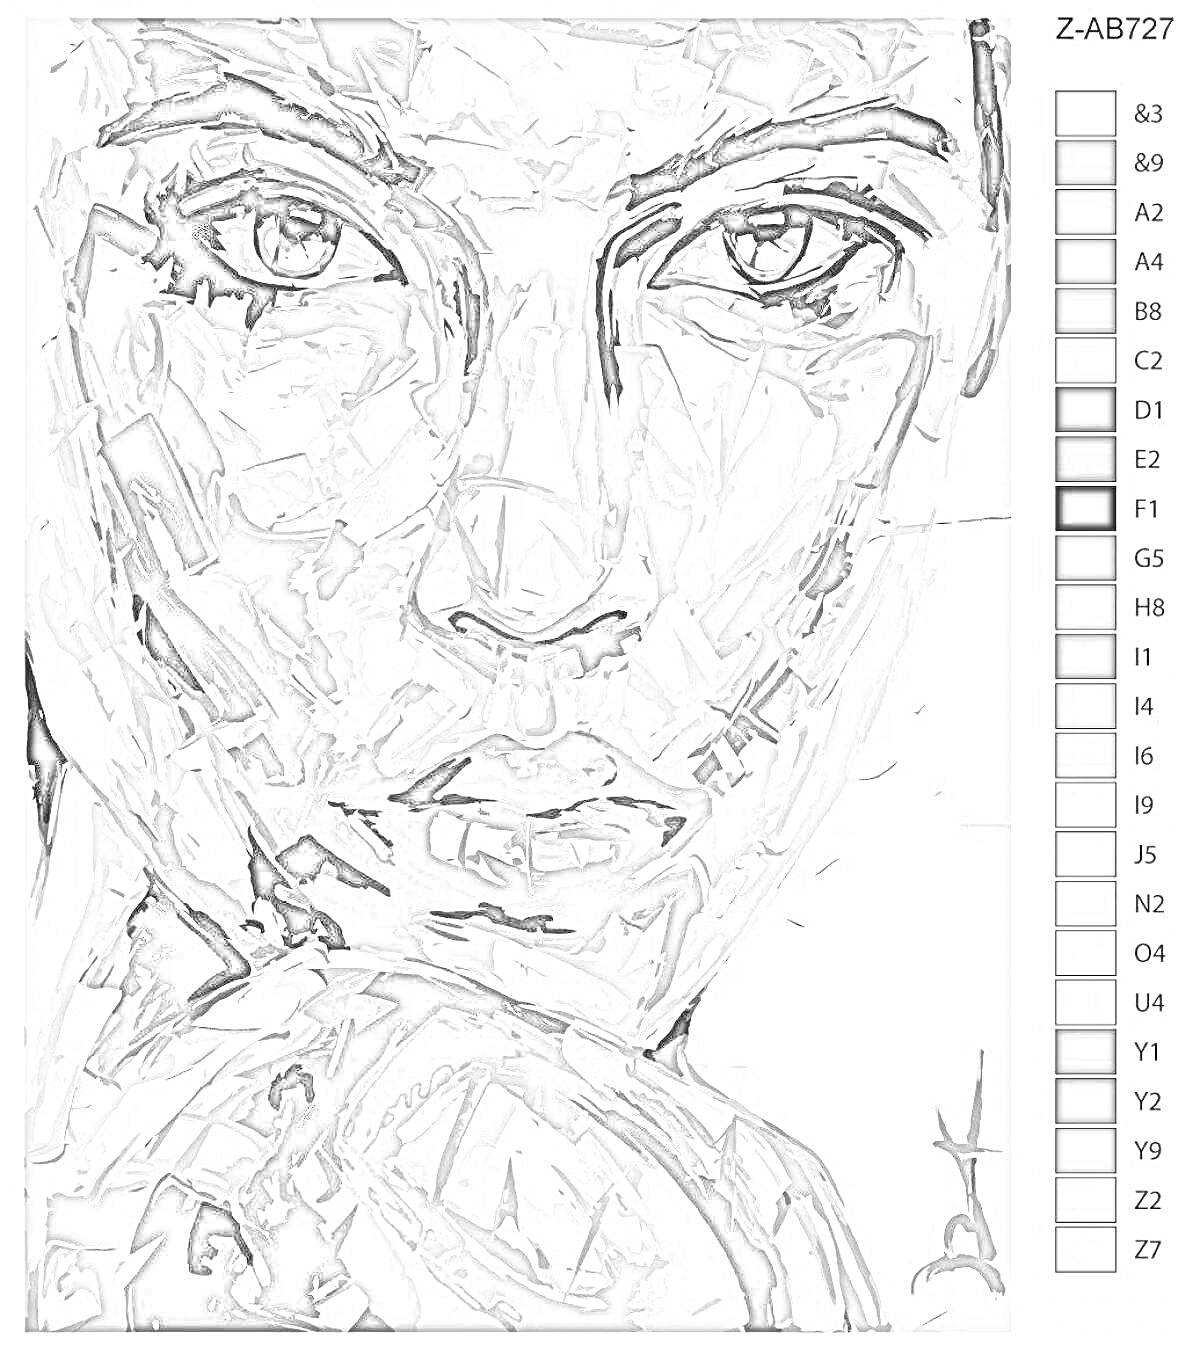 Раскраска Портрет по номерам крупным планом с оттенками серого и черного, на котором изображено лицо человека с акцентом на глаза, нос и губы; представлен справочник с номерами оттенков.